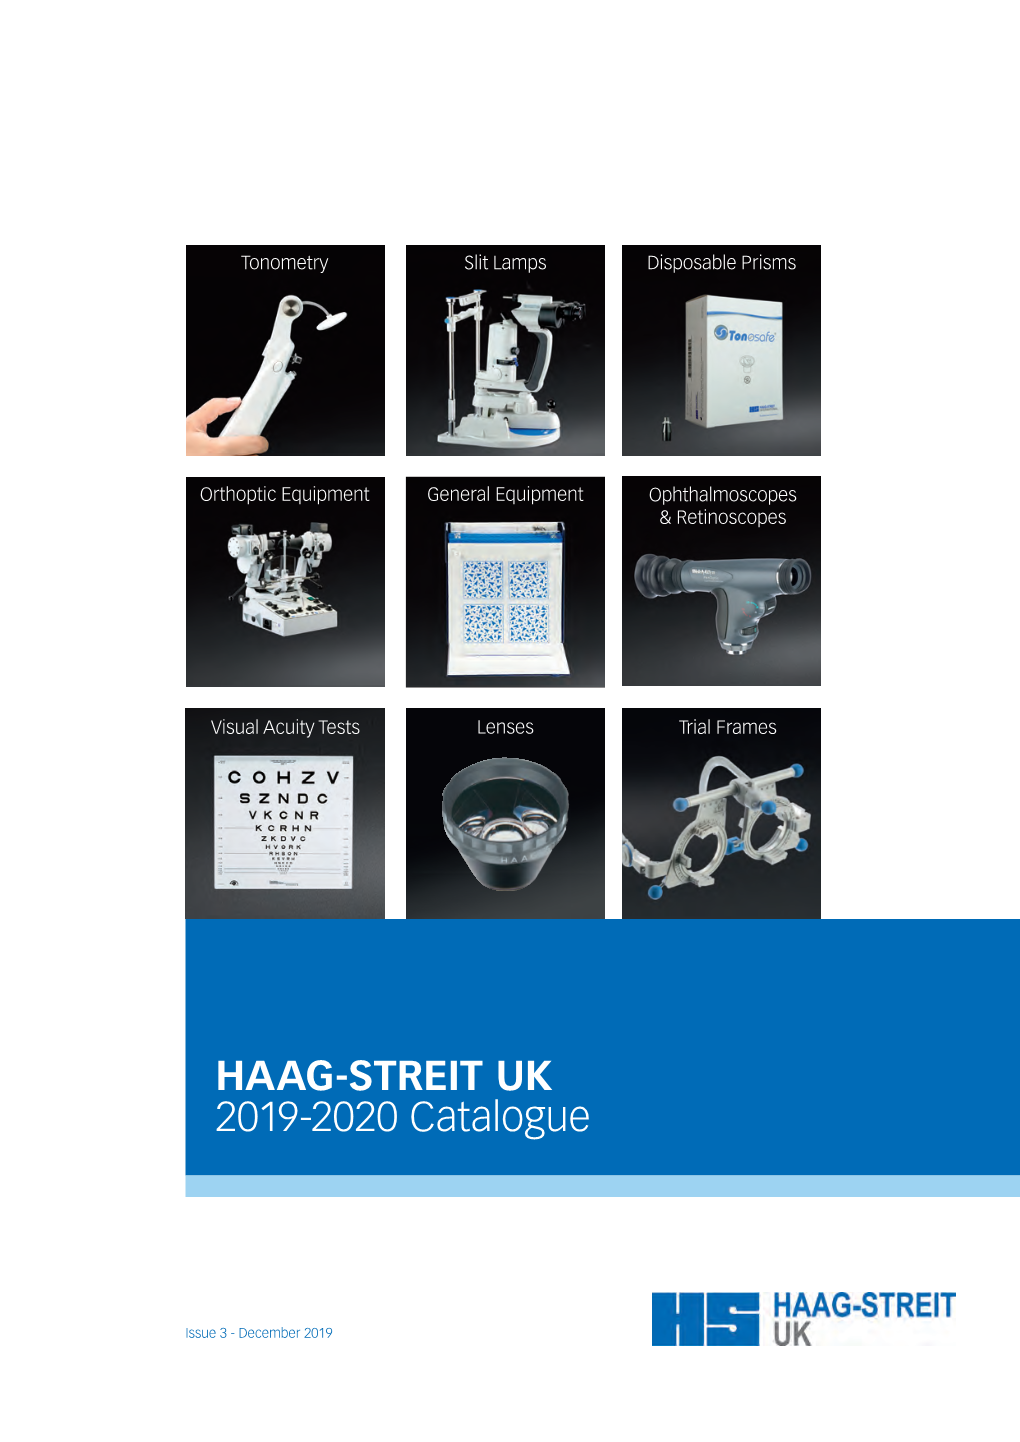 HAAG-STREIT UK 2019-2020 Catalogue